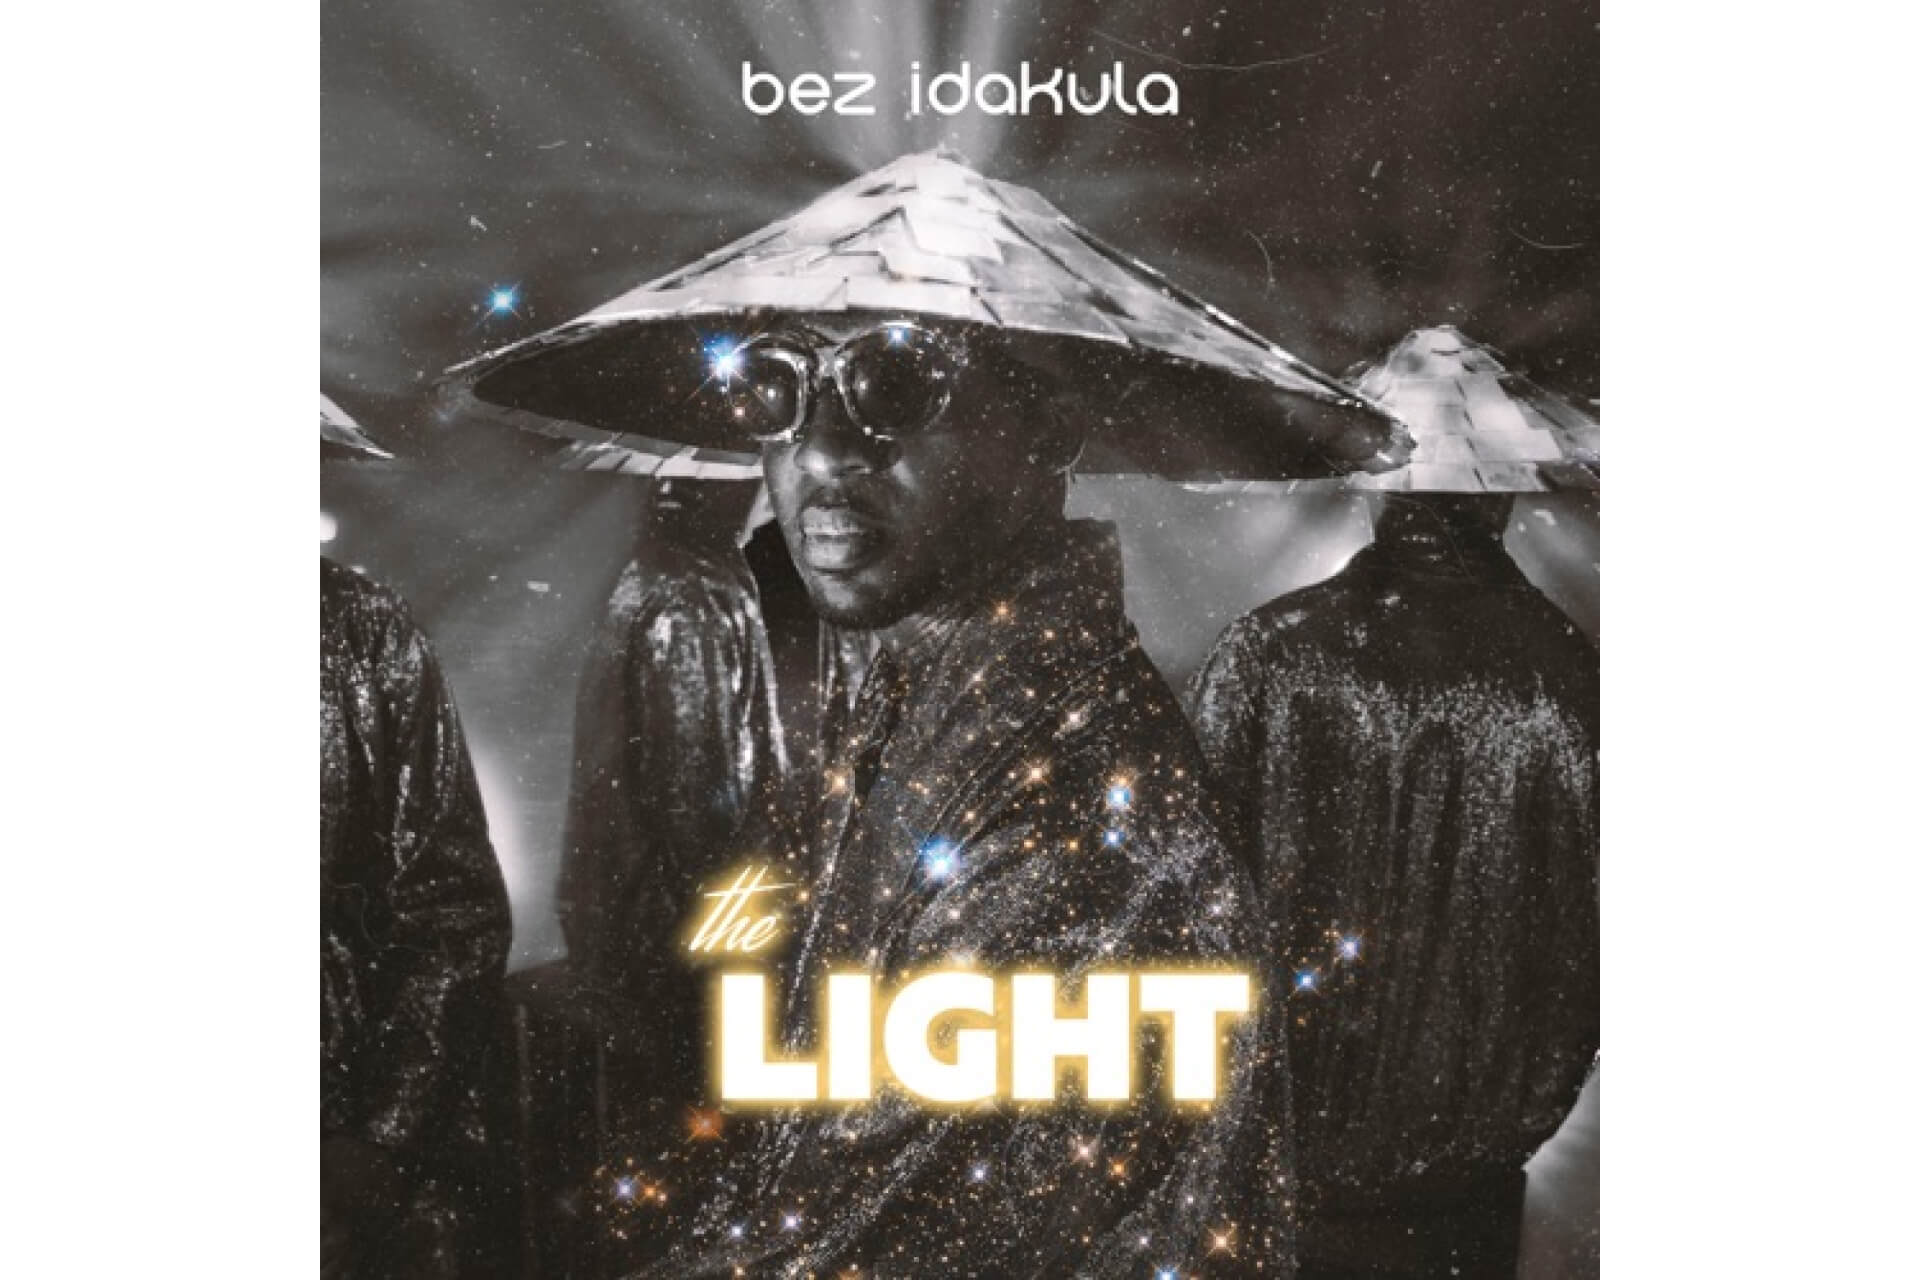 Bez - The Light